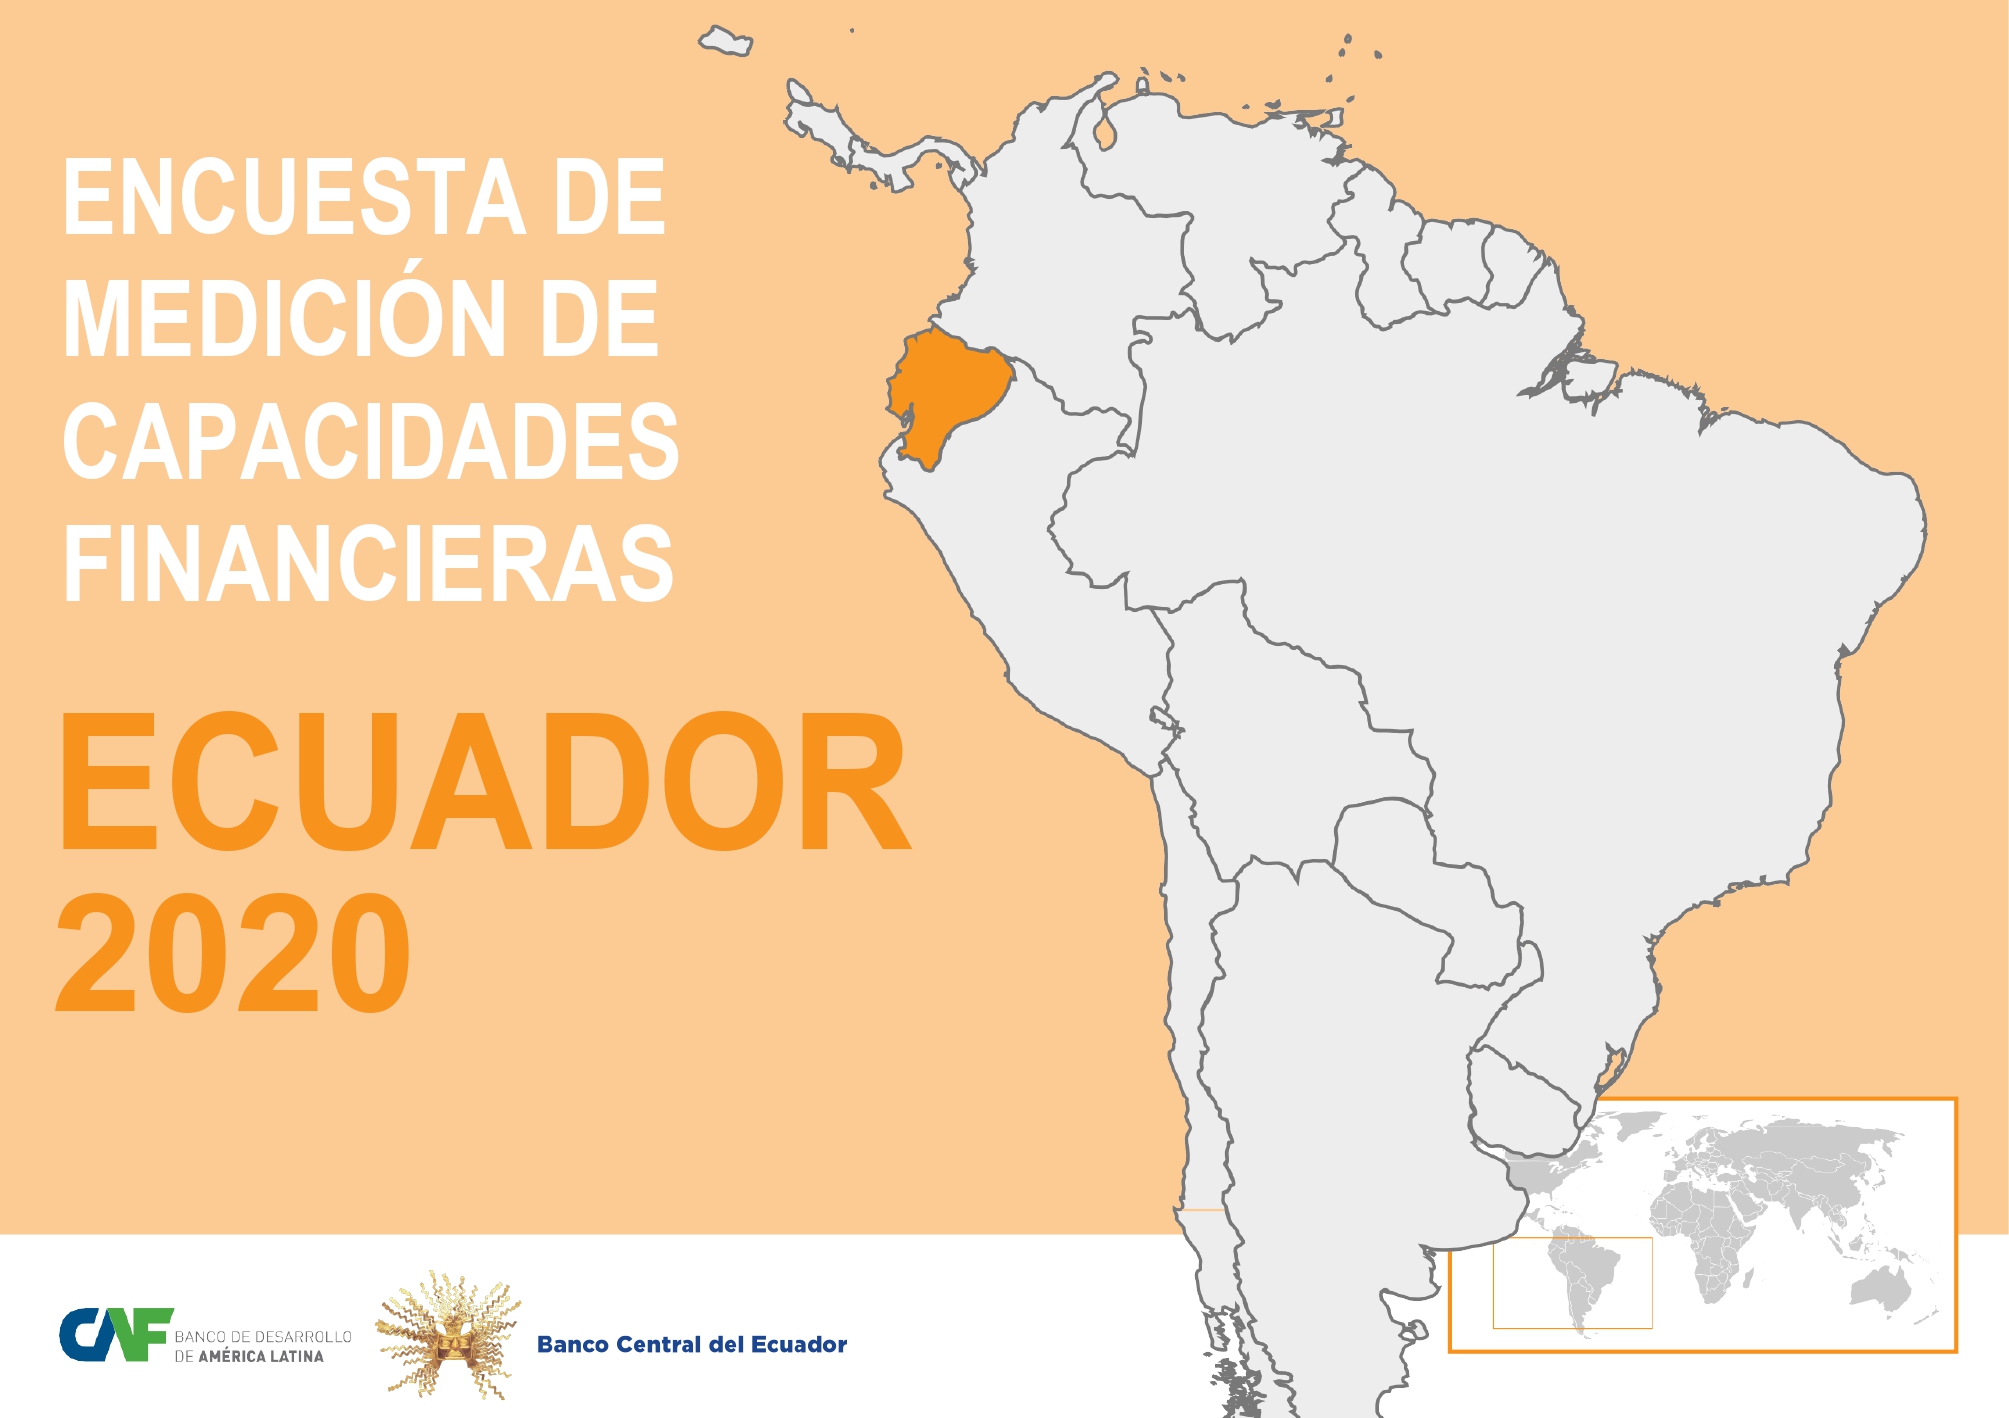 Encuesta de medición de capacidades financieras: Ecuador 2020